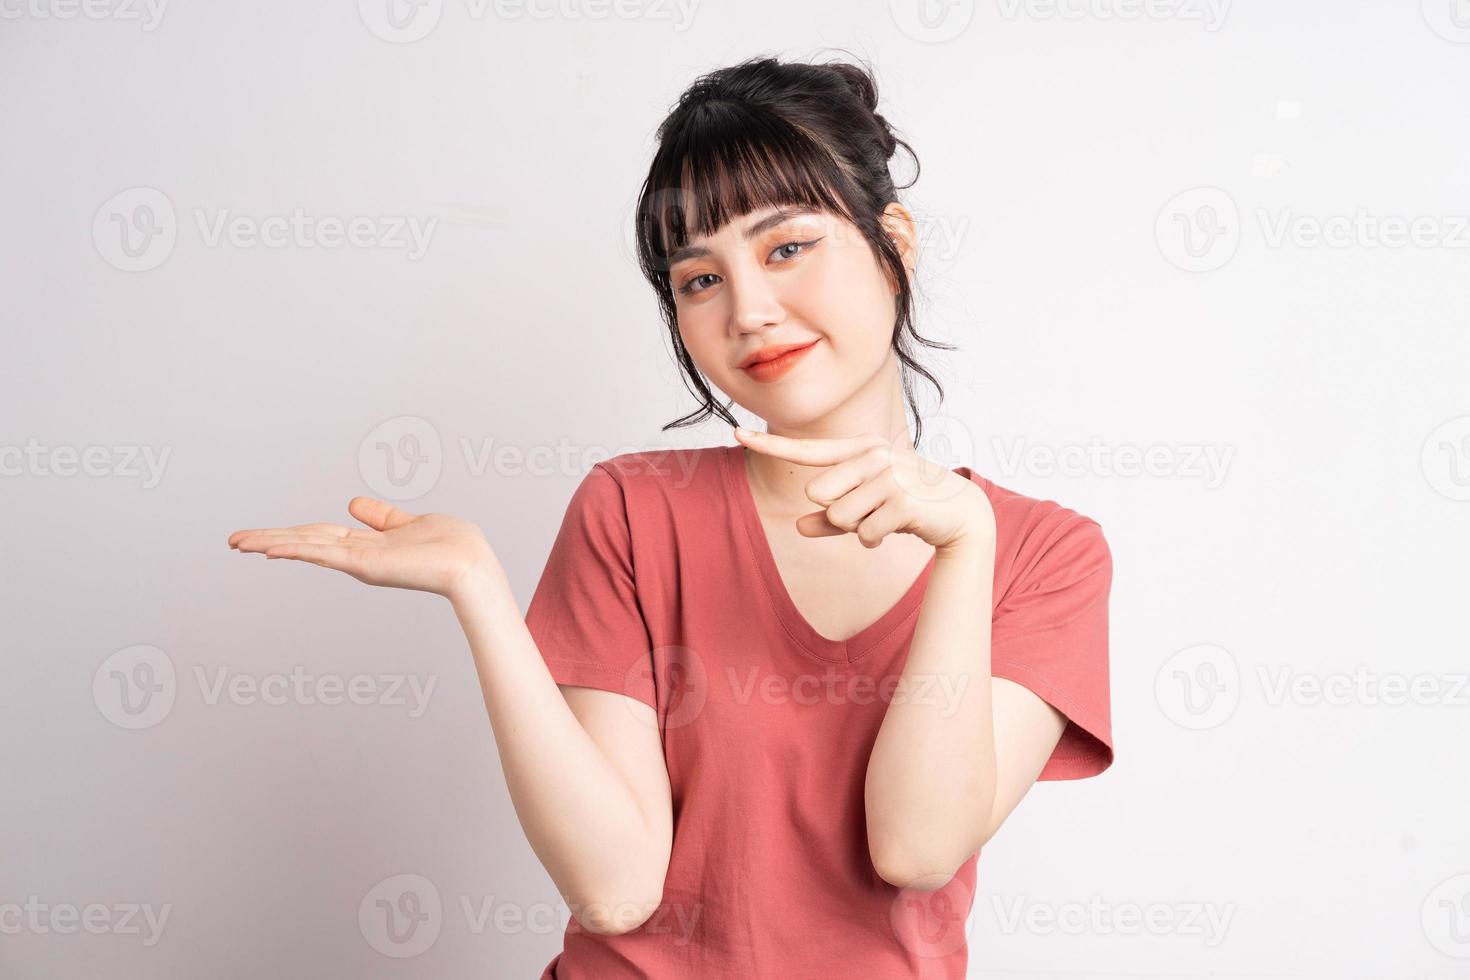 jonge aziatische vrouw die zich voordeed op een witte achtergrond, met de vinger om te wijzen en te laten zien, handgebaar foto